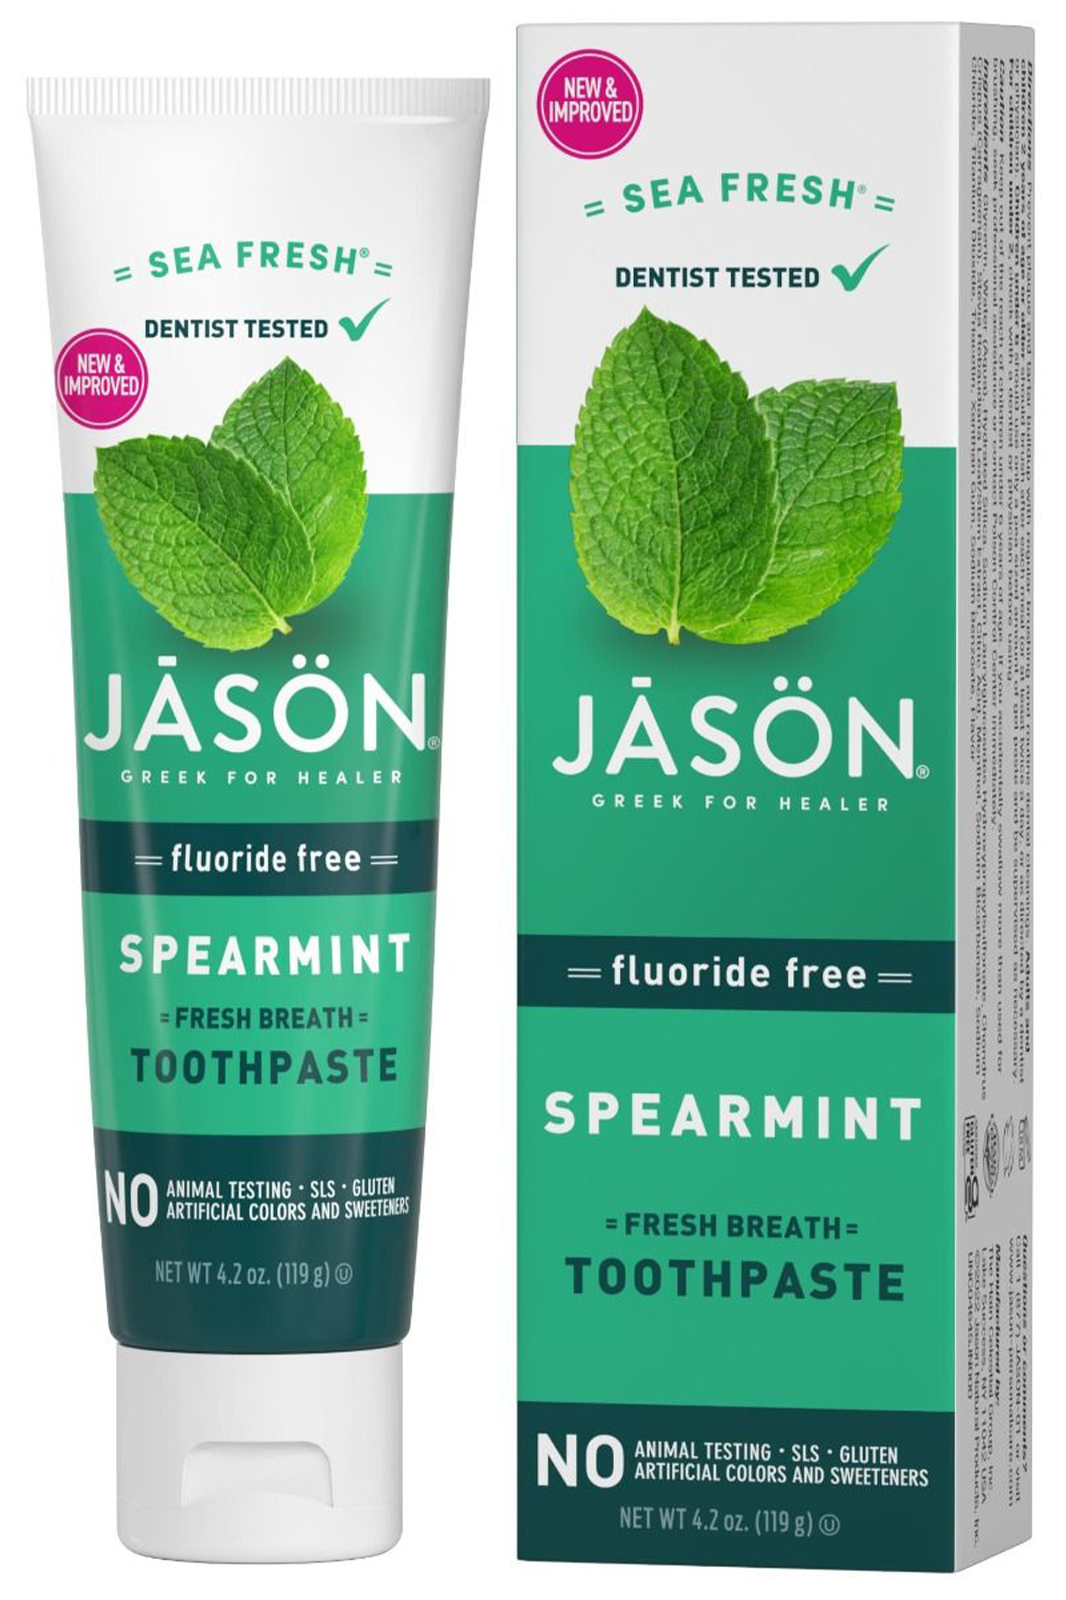 Sea Fresh Toothpaste 170g (Jason)